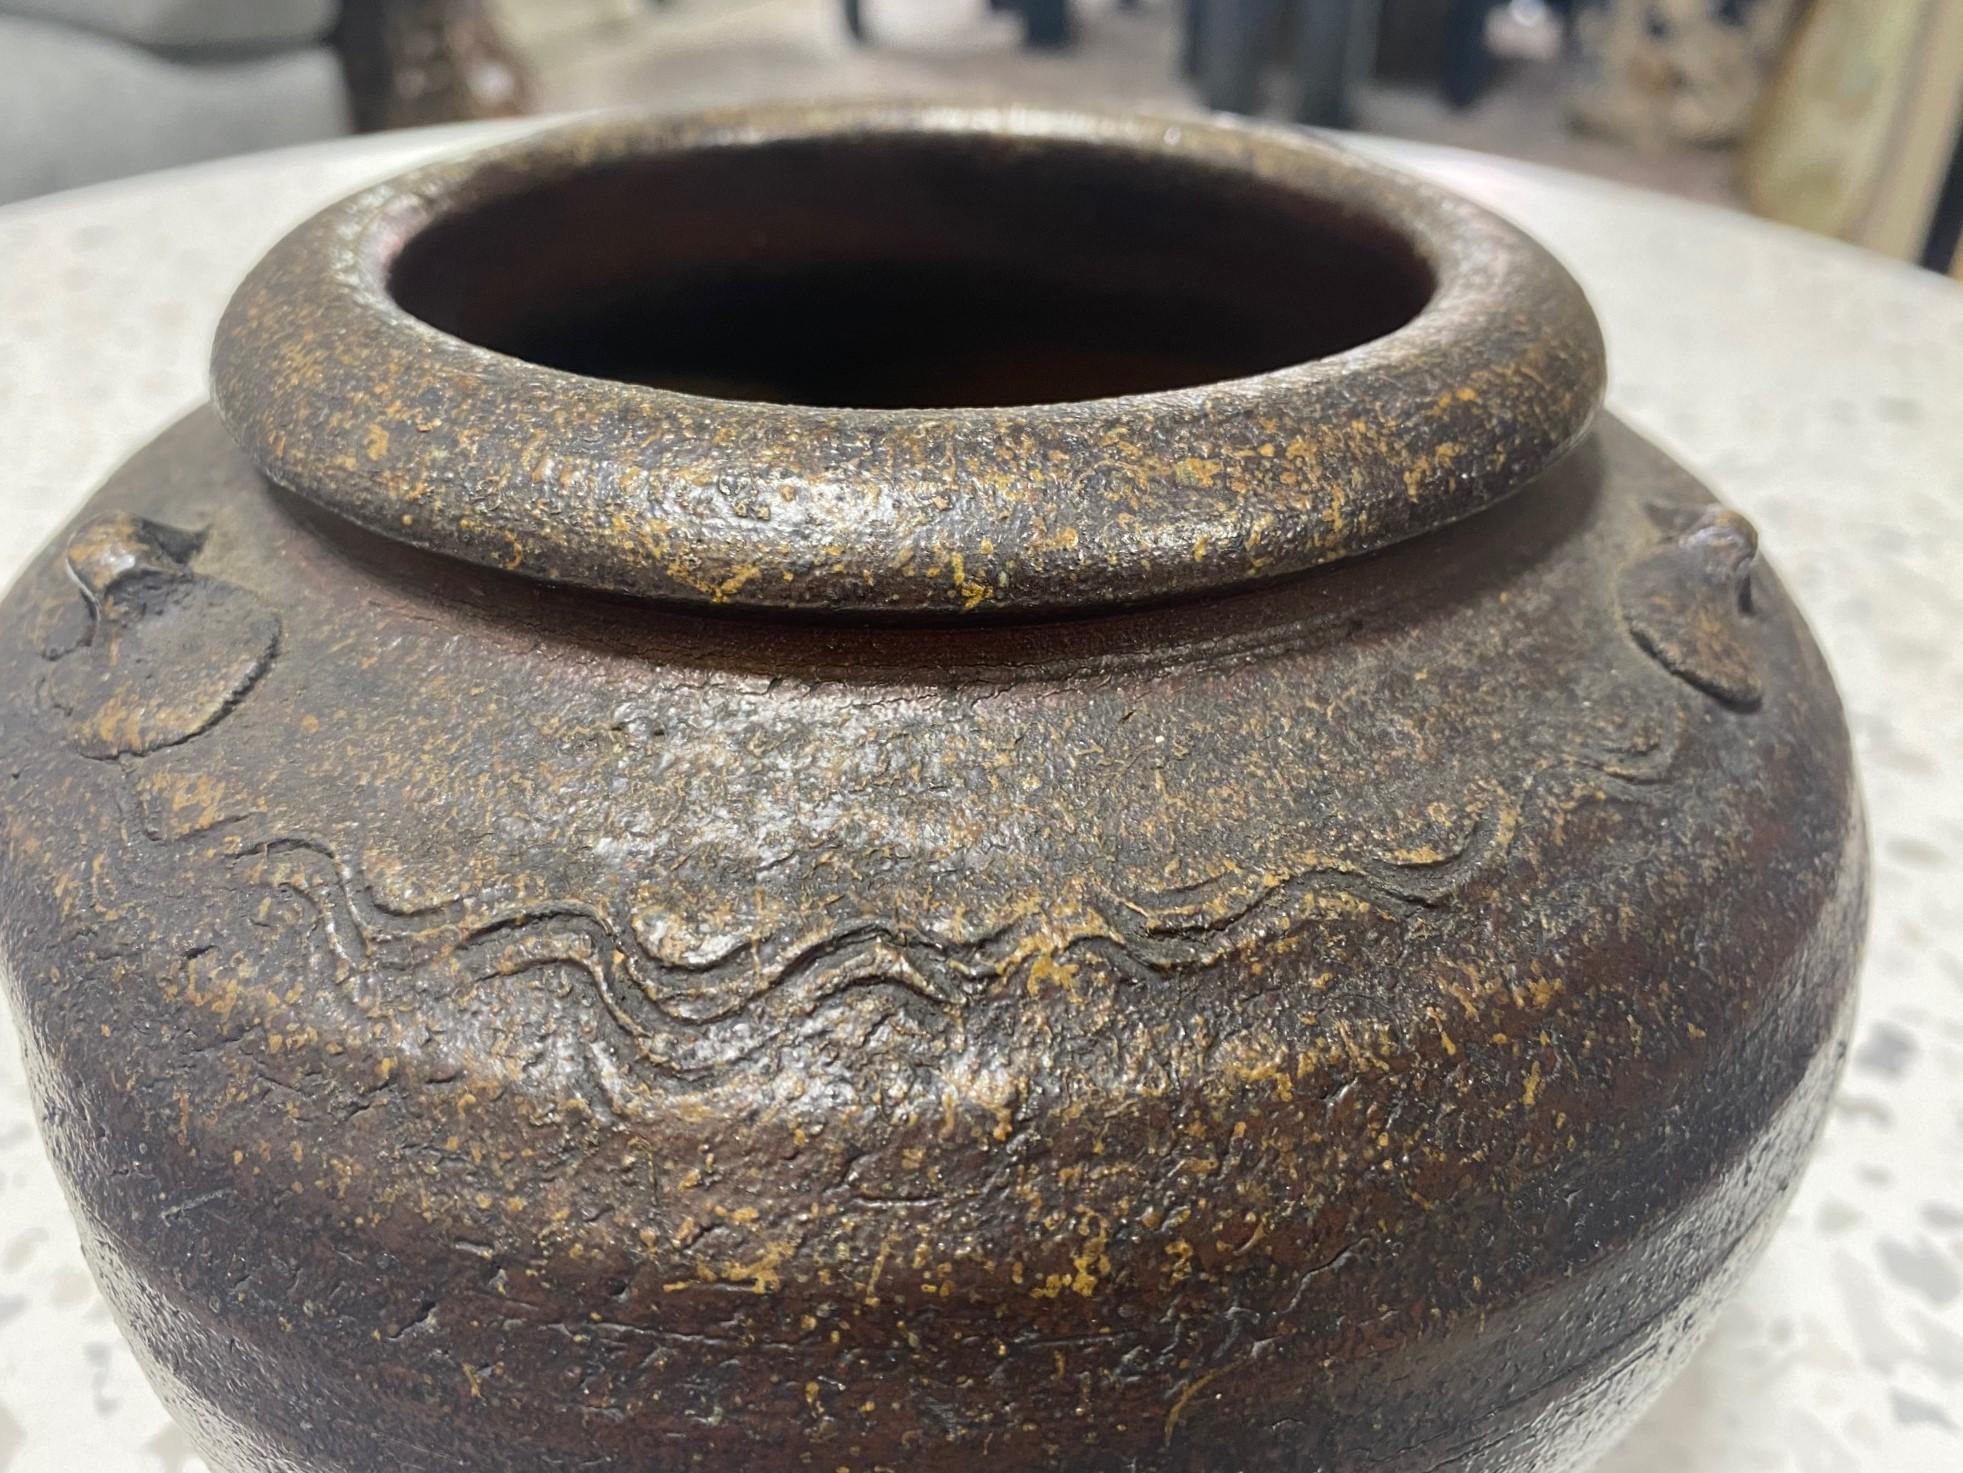 Kaneshige Toyo National Treasure Signed Japanese Bizen Pottery Tsubo Jar Vase For Sale 3